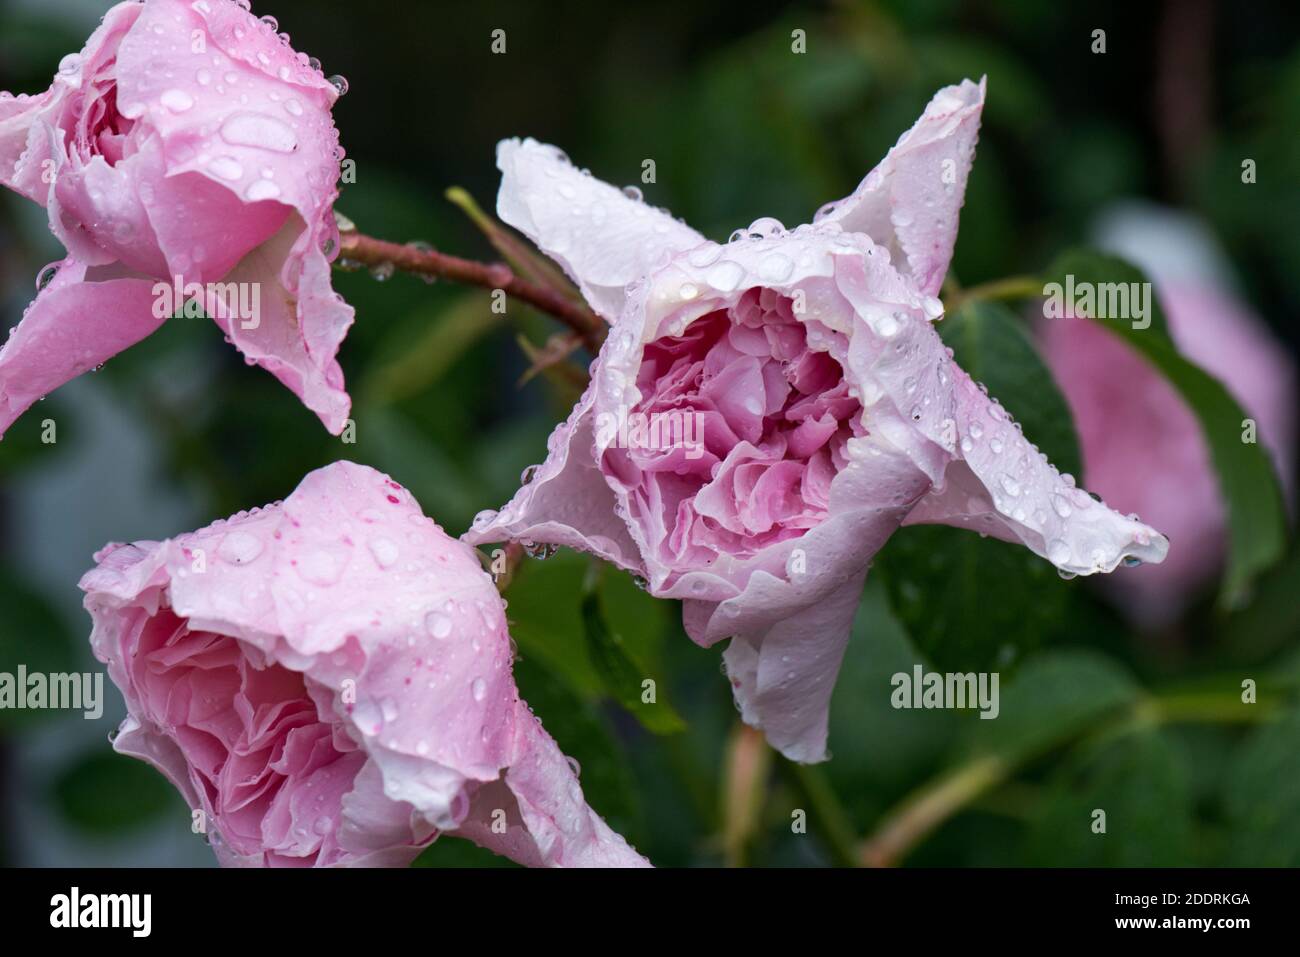 Fleurs de rose (Rosa sp.) recouvertes de rames de pluie et montrant des signes précoces et avançant de moisissure grise (Botrytis cinerea), juin Banque D'Images